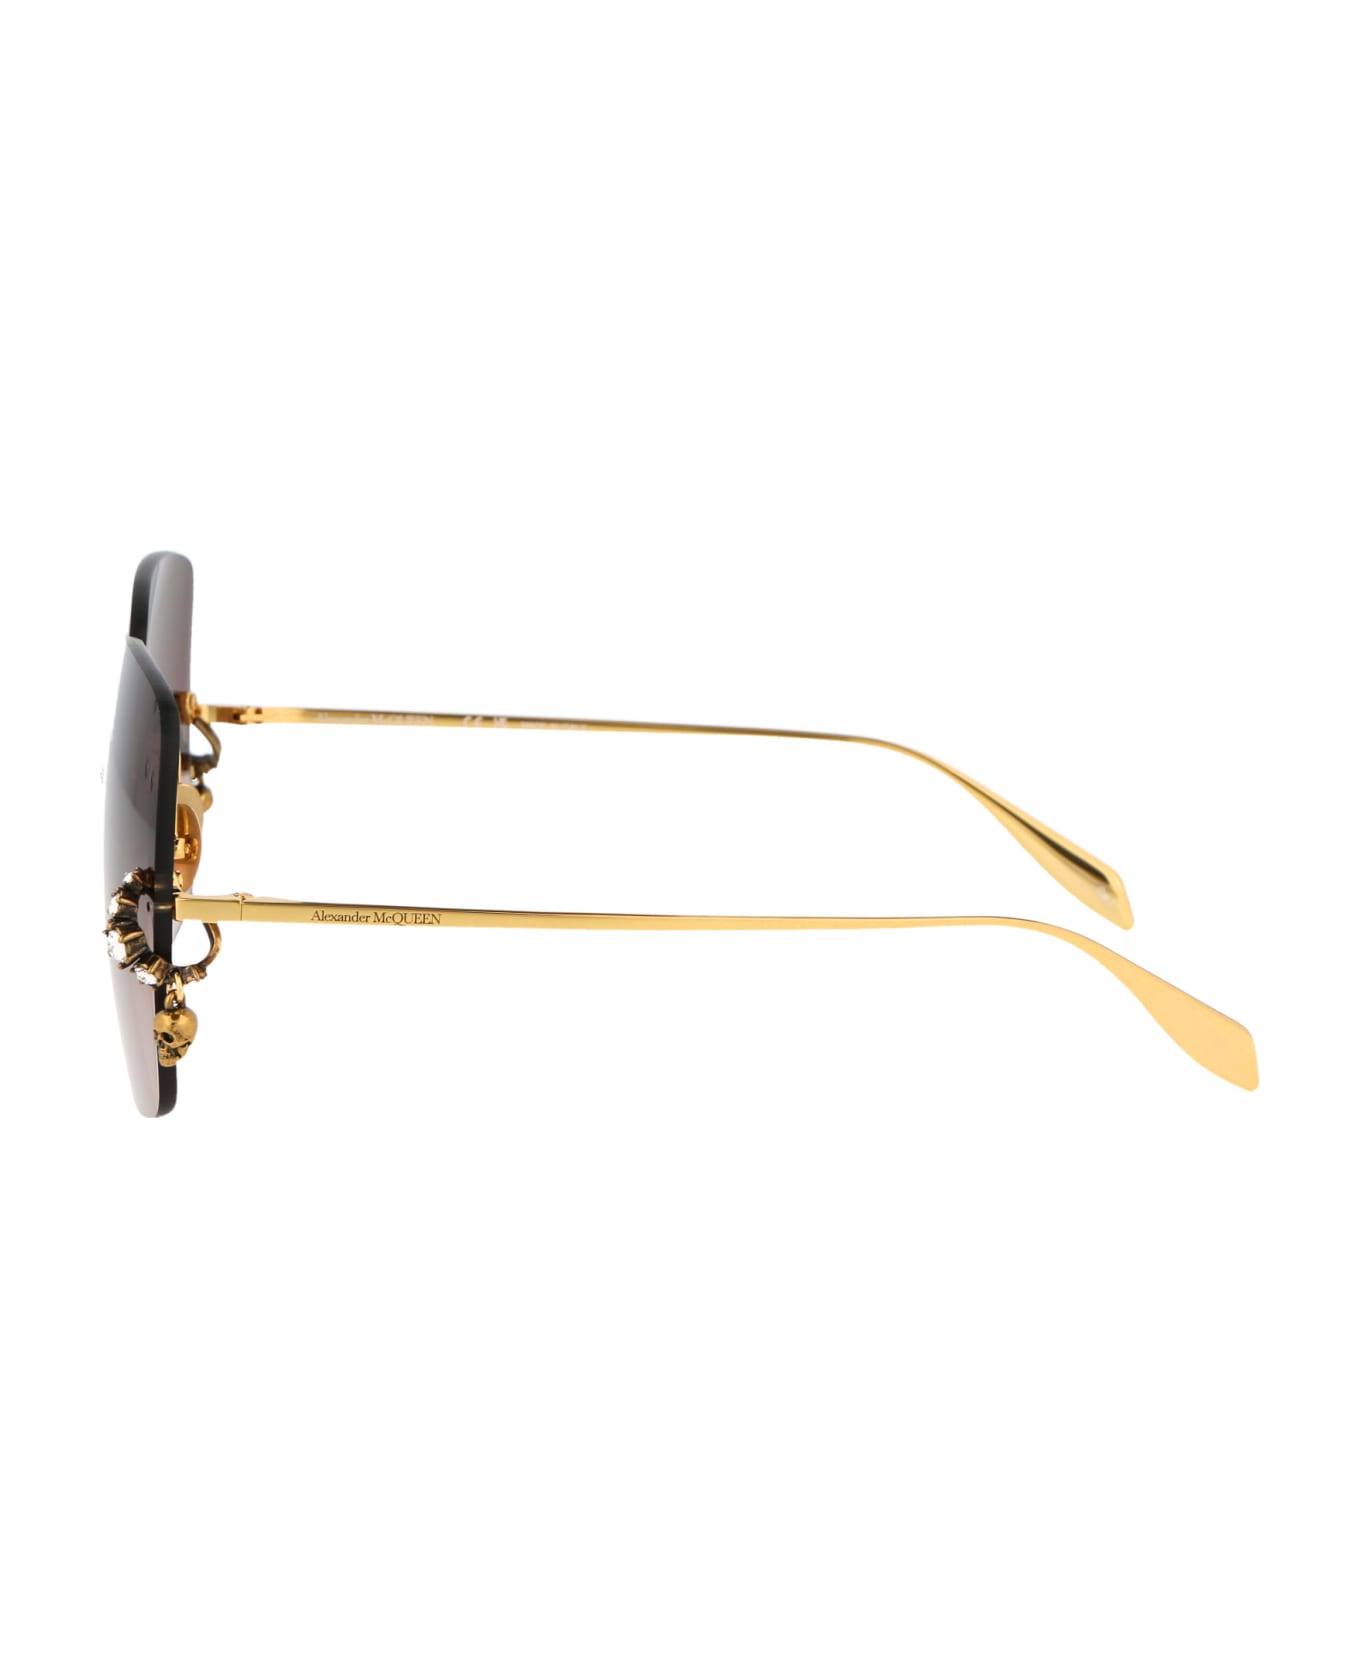 Alexander McQueen Eyewear Am0390s Sunglasses - 002 GOLD GOLD BROWN サングラス